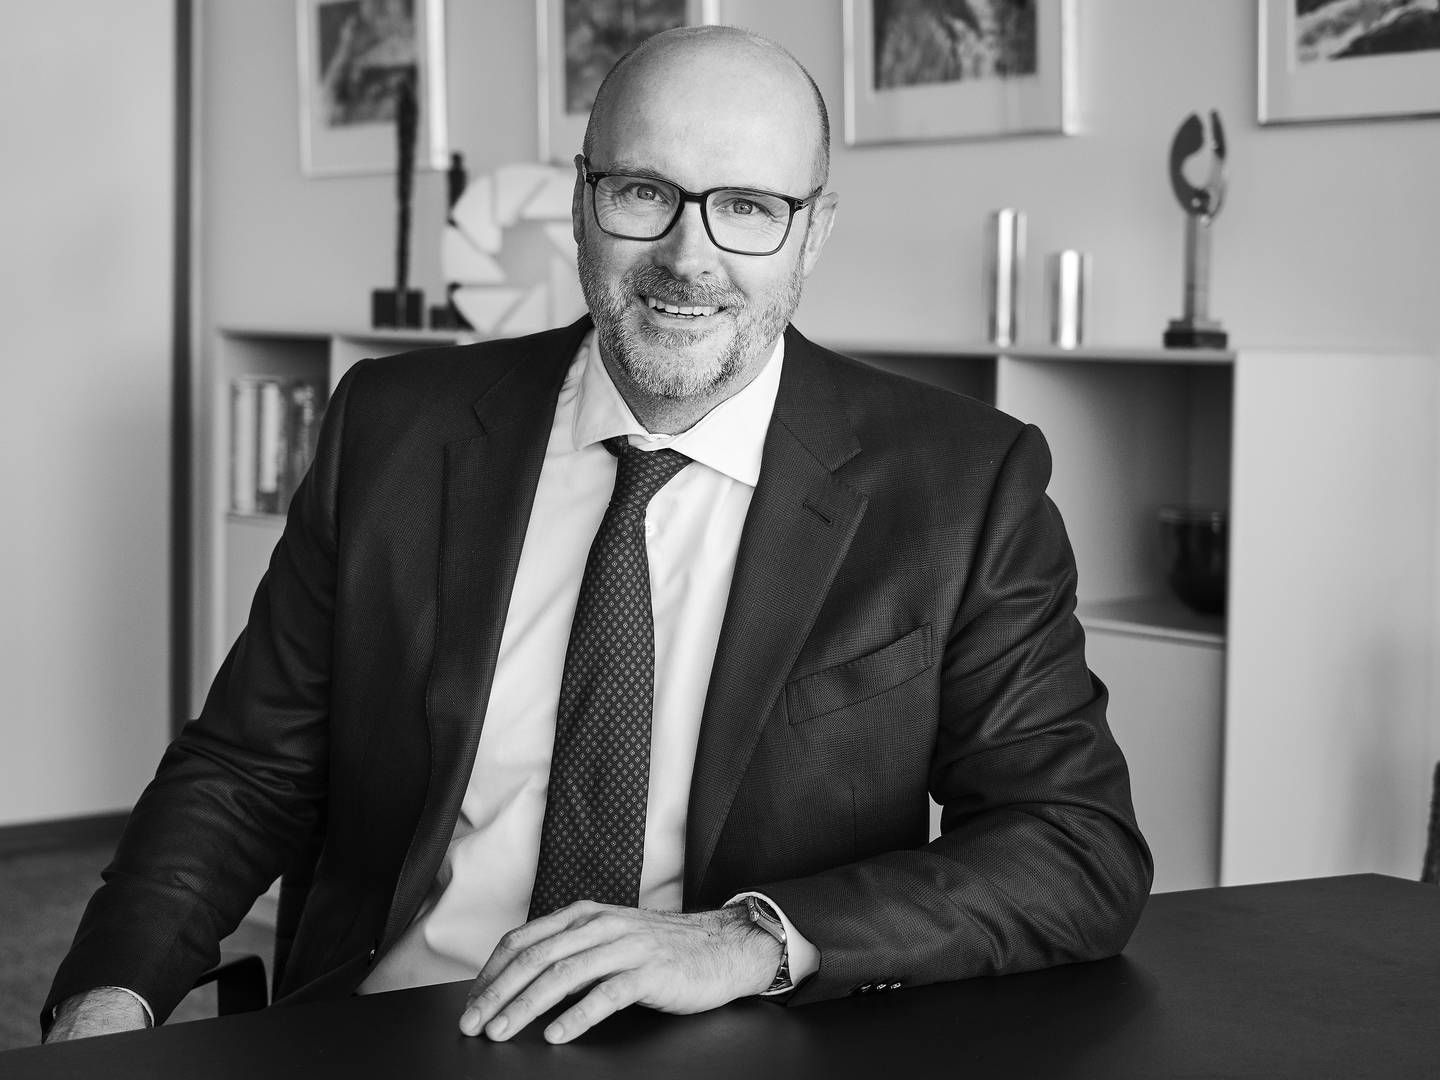 Et salg til Jyske Bank har givet Handelsbanken et mere simpelt exit fra Danmark end andre konstellationer, lyder det fra direktør Lars Stensgaard Mørch. | Foto: Jyske Bank/PR